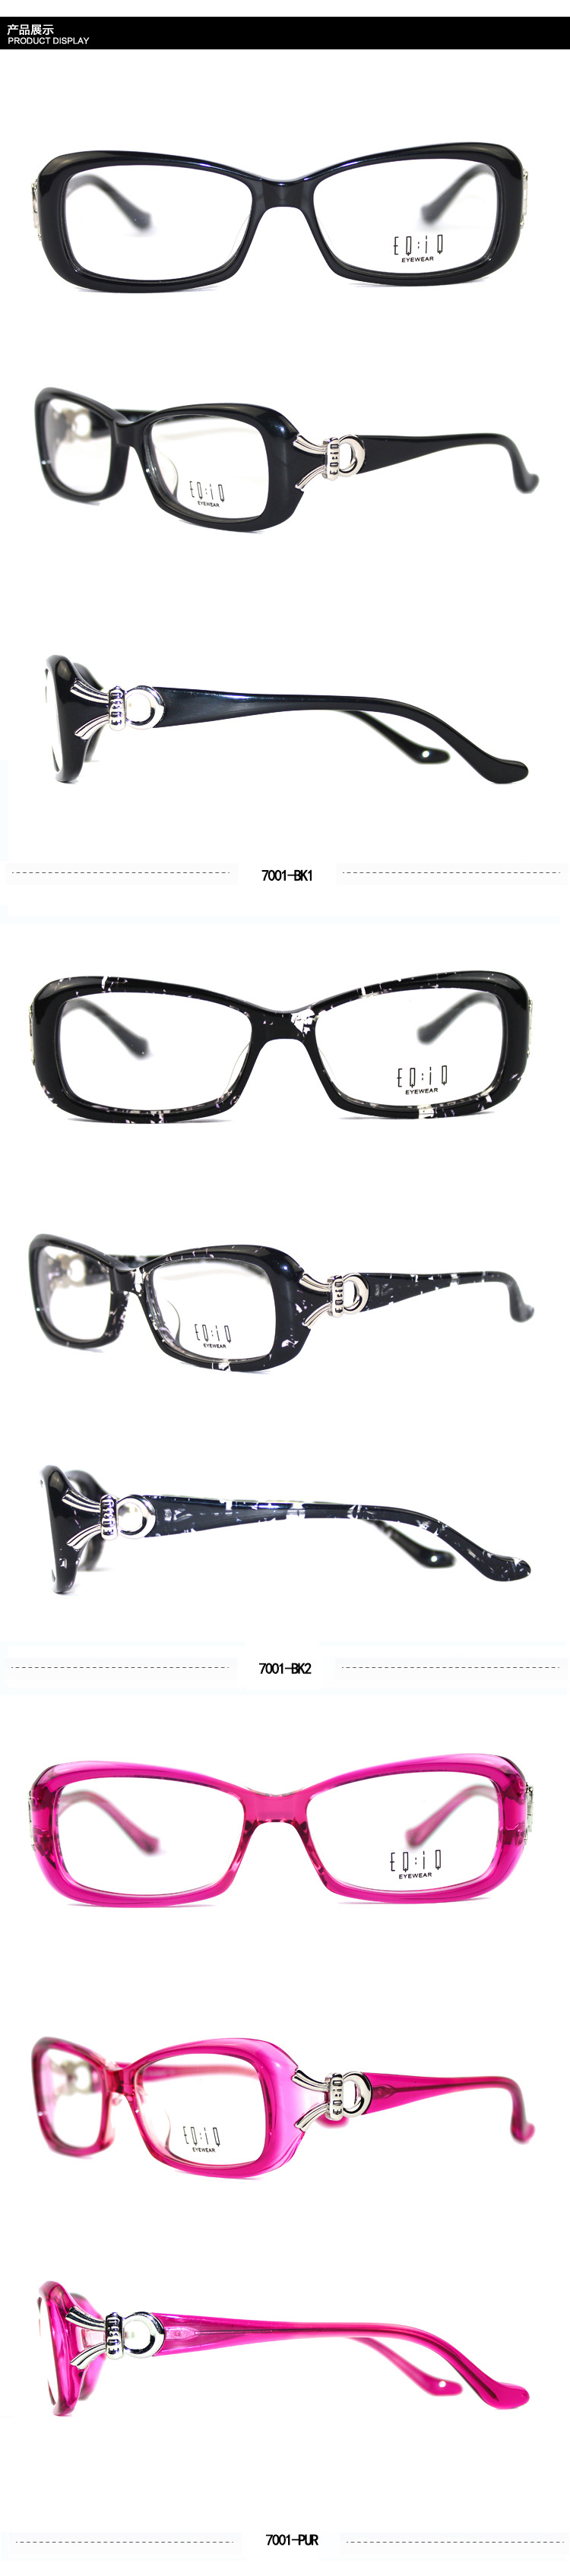 批发EQIQ品牌近视眼镜框复古时尚女士板材眼镜架配近视眼镜平光镜示例图5